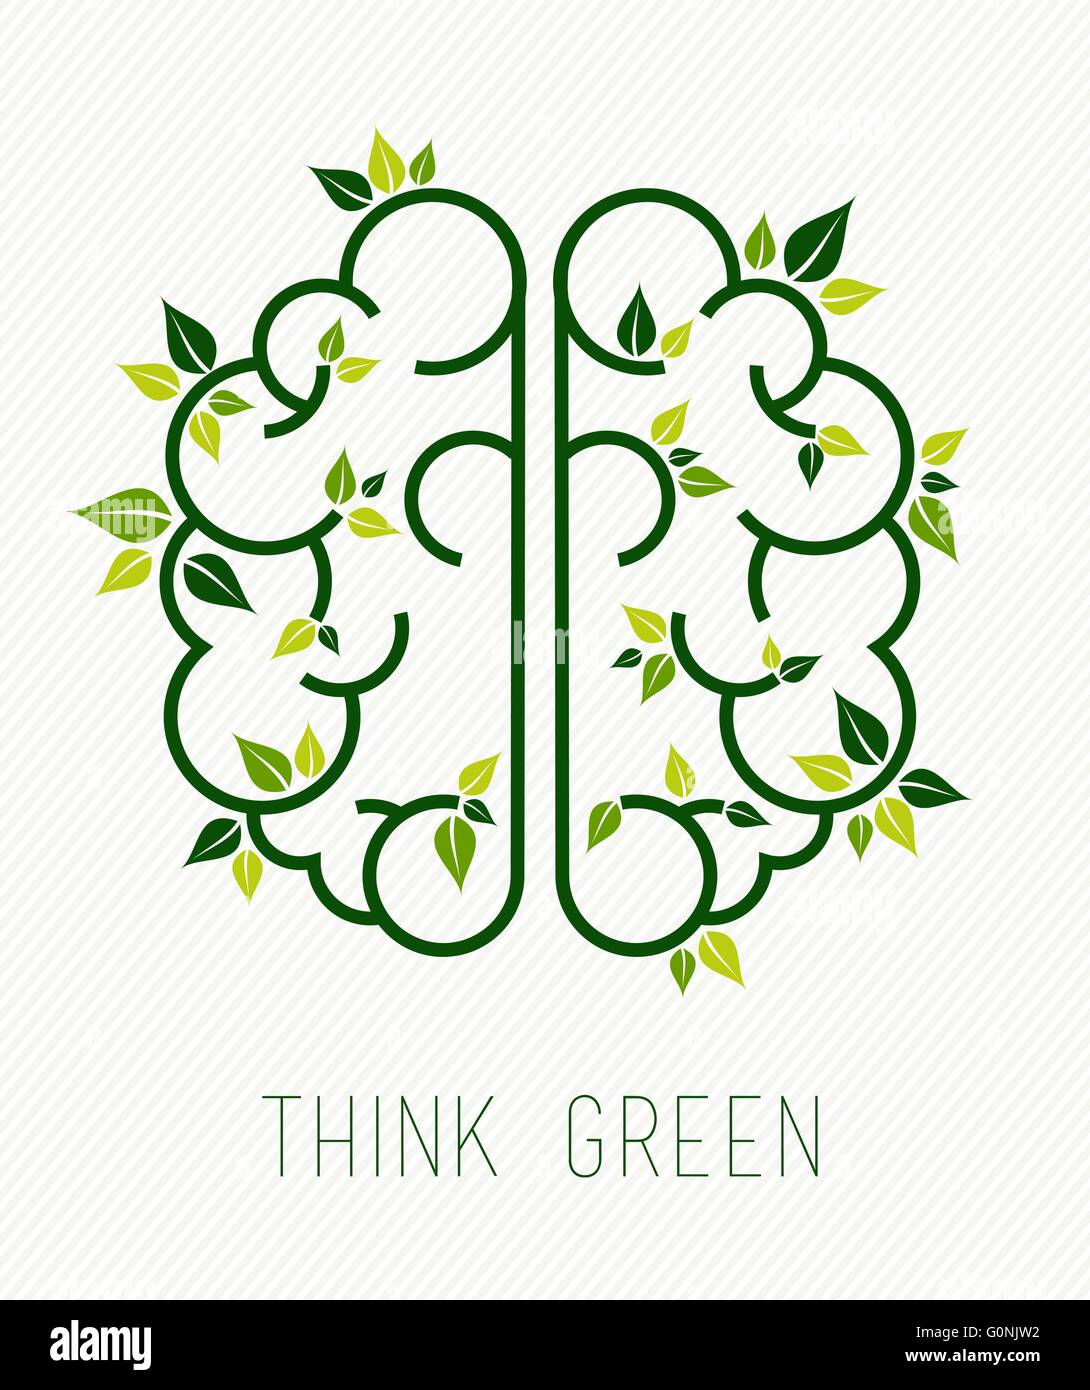 Denken Sie grün Konzept, Design, einfache menschliche Gehirn im Line-Art-Stil mit Elementen der Natur und Pflanzenblätter. EPS10 Vektor. Stock Vektor